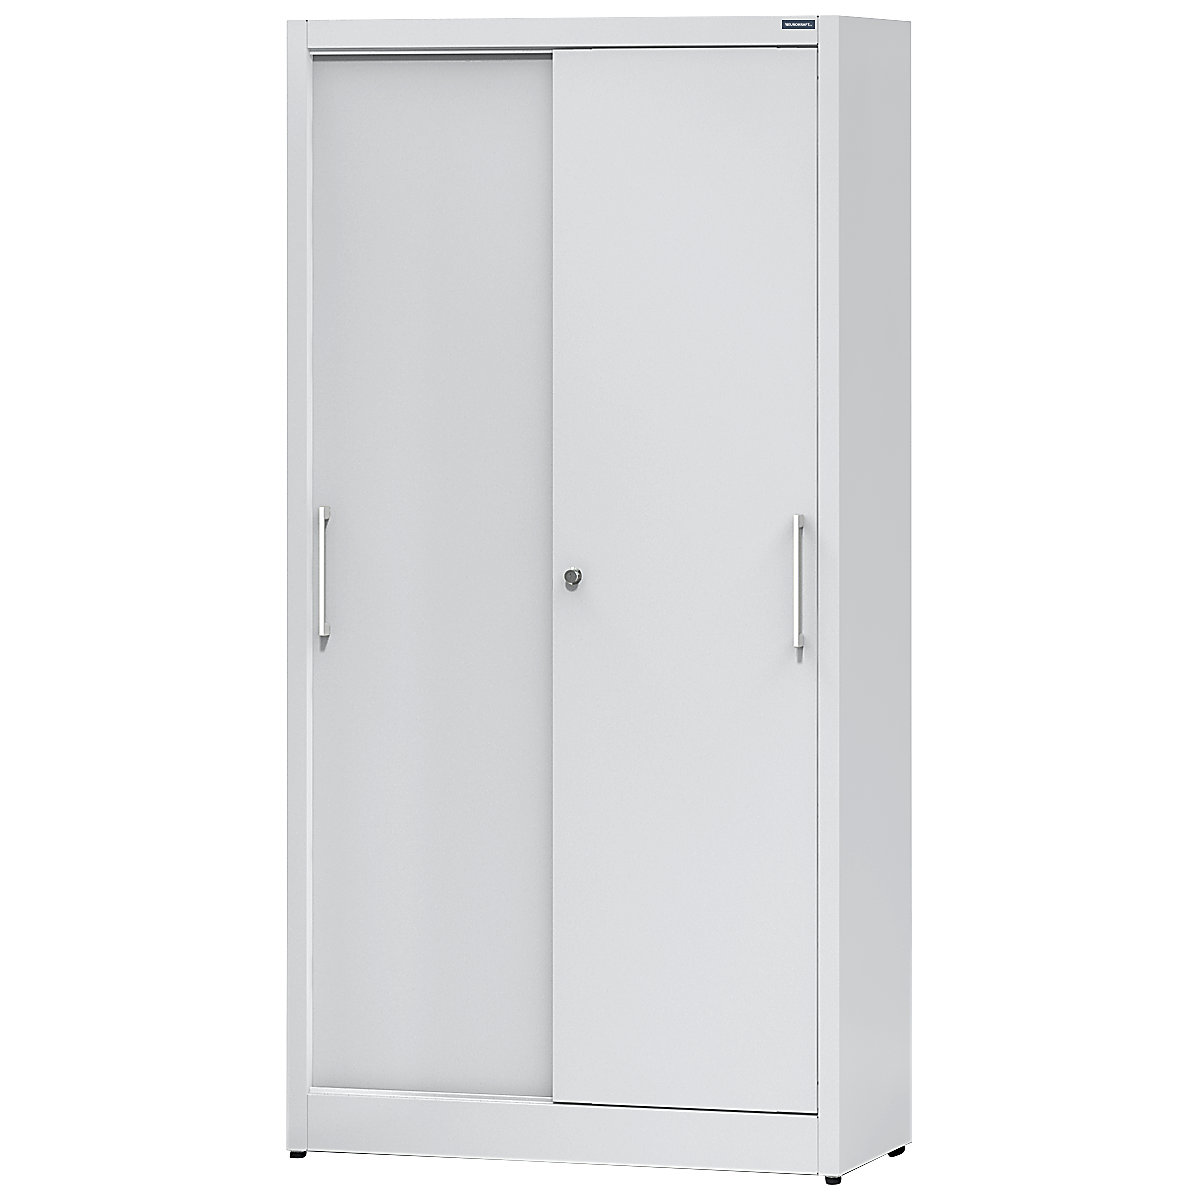 Sliding door cupboard, height 1950 mm – eurokraft pro, with 4 shelves, width 1000 mm, depth 420 mm, doors in light grey RAL 7035-8